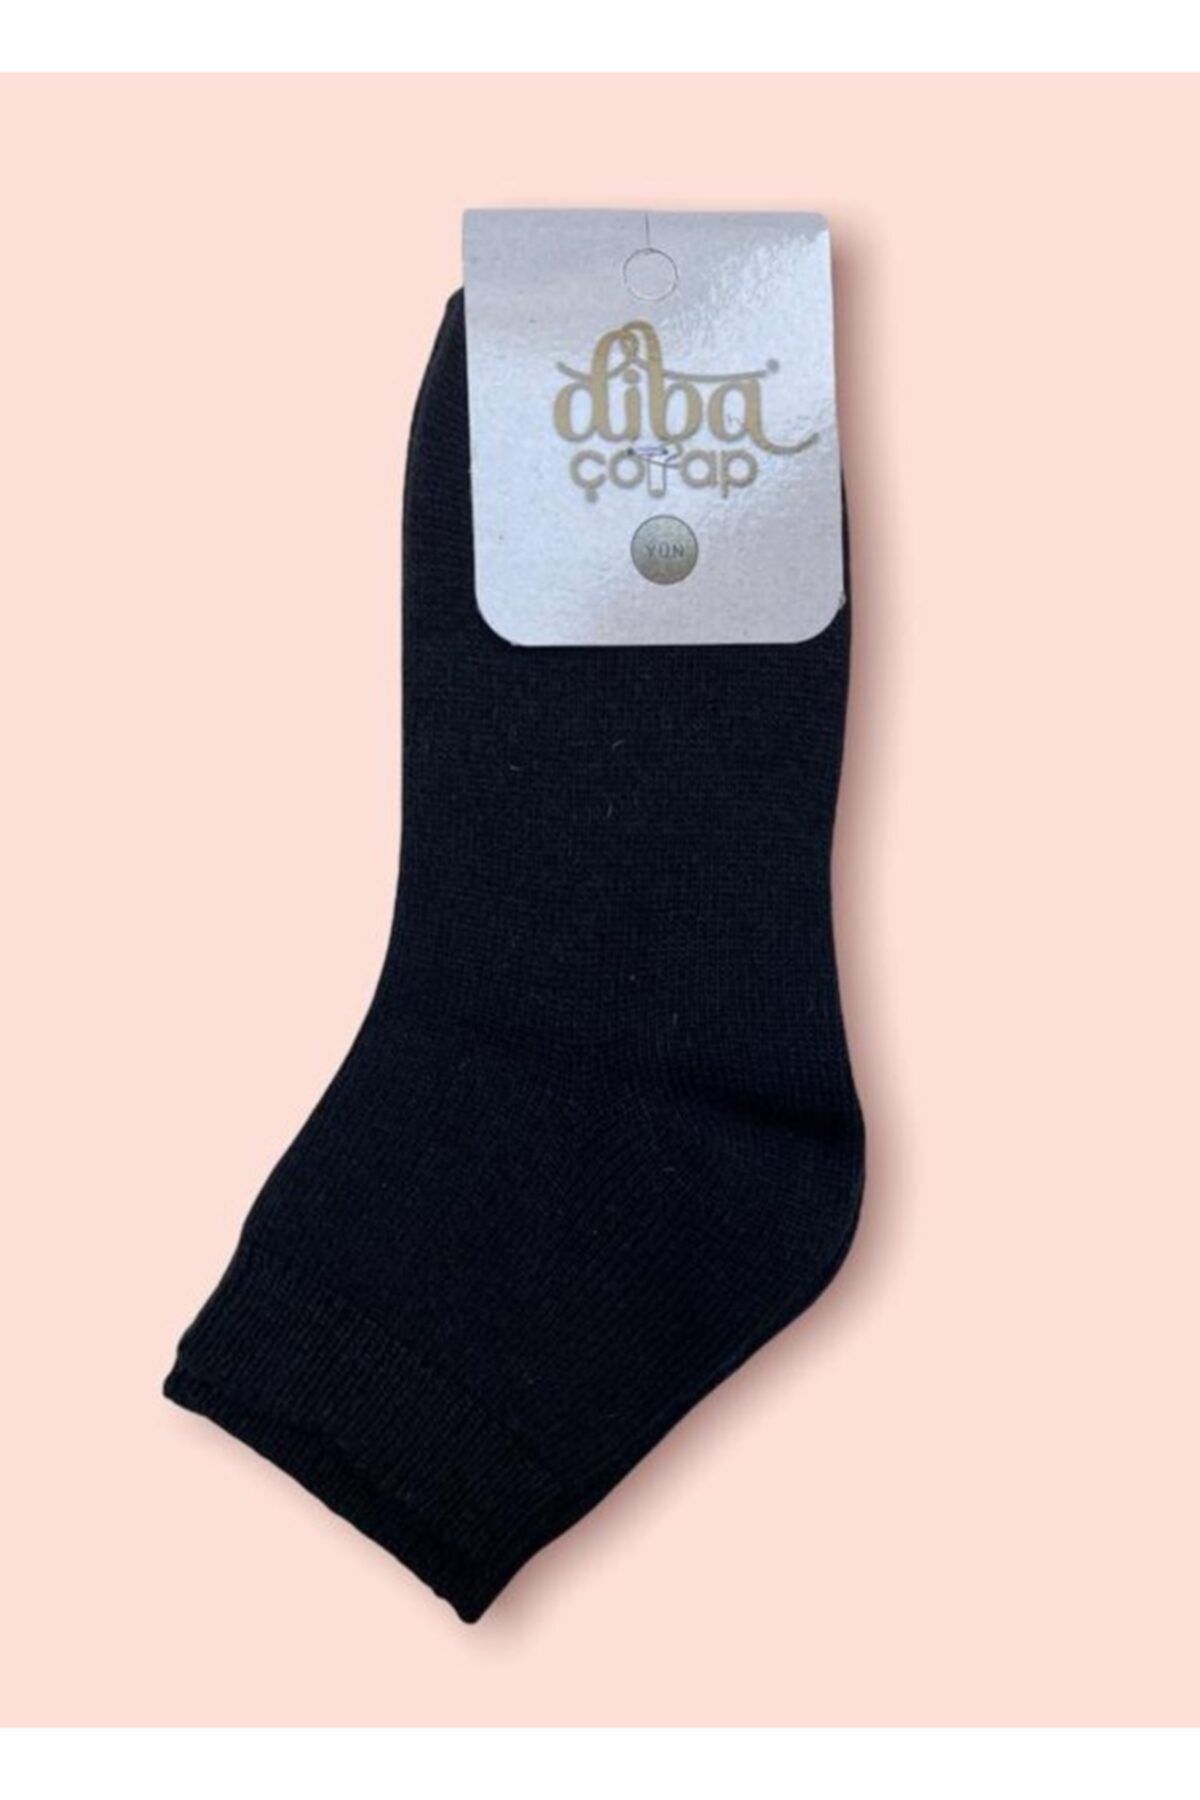 Diba Kadın Siyah Yün Kışlık Patik Çorap